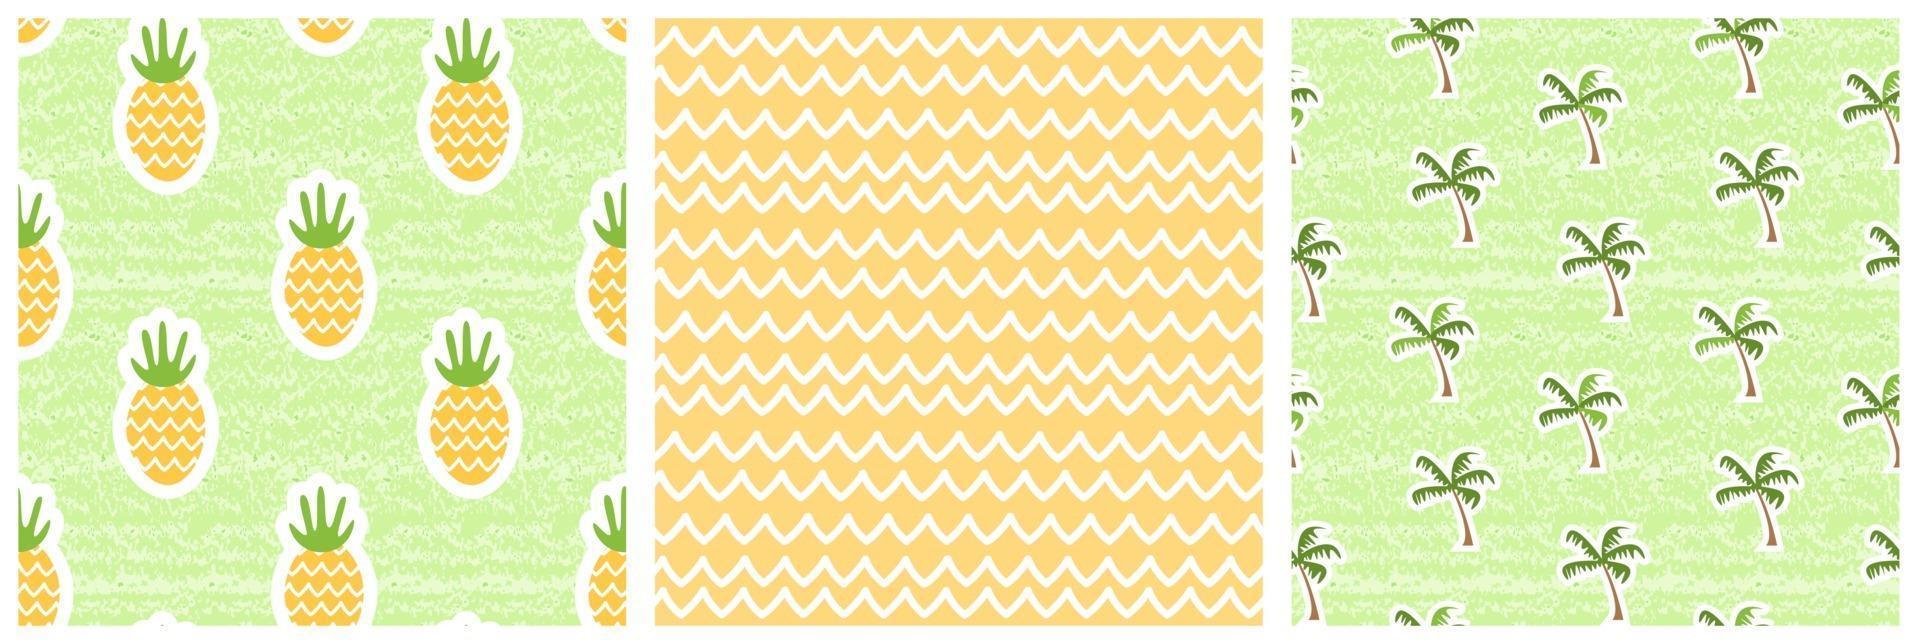 Satz nahtlose Muster der Sommernatur. Vektor-Illustration von Ananas, Palmen, gelben Wellen. schäbiger, gealterter Effekt vektor